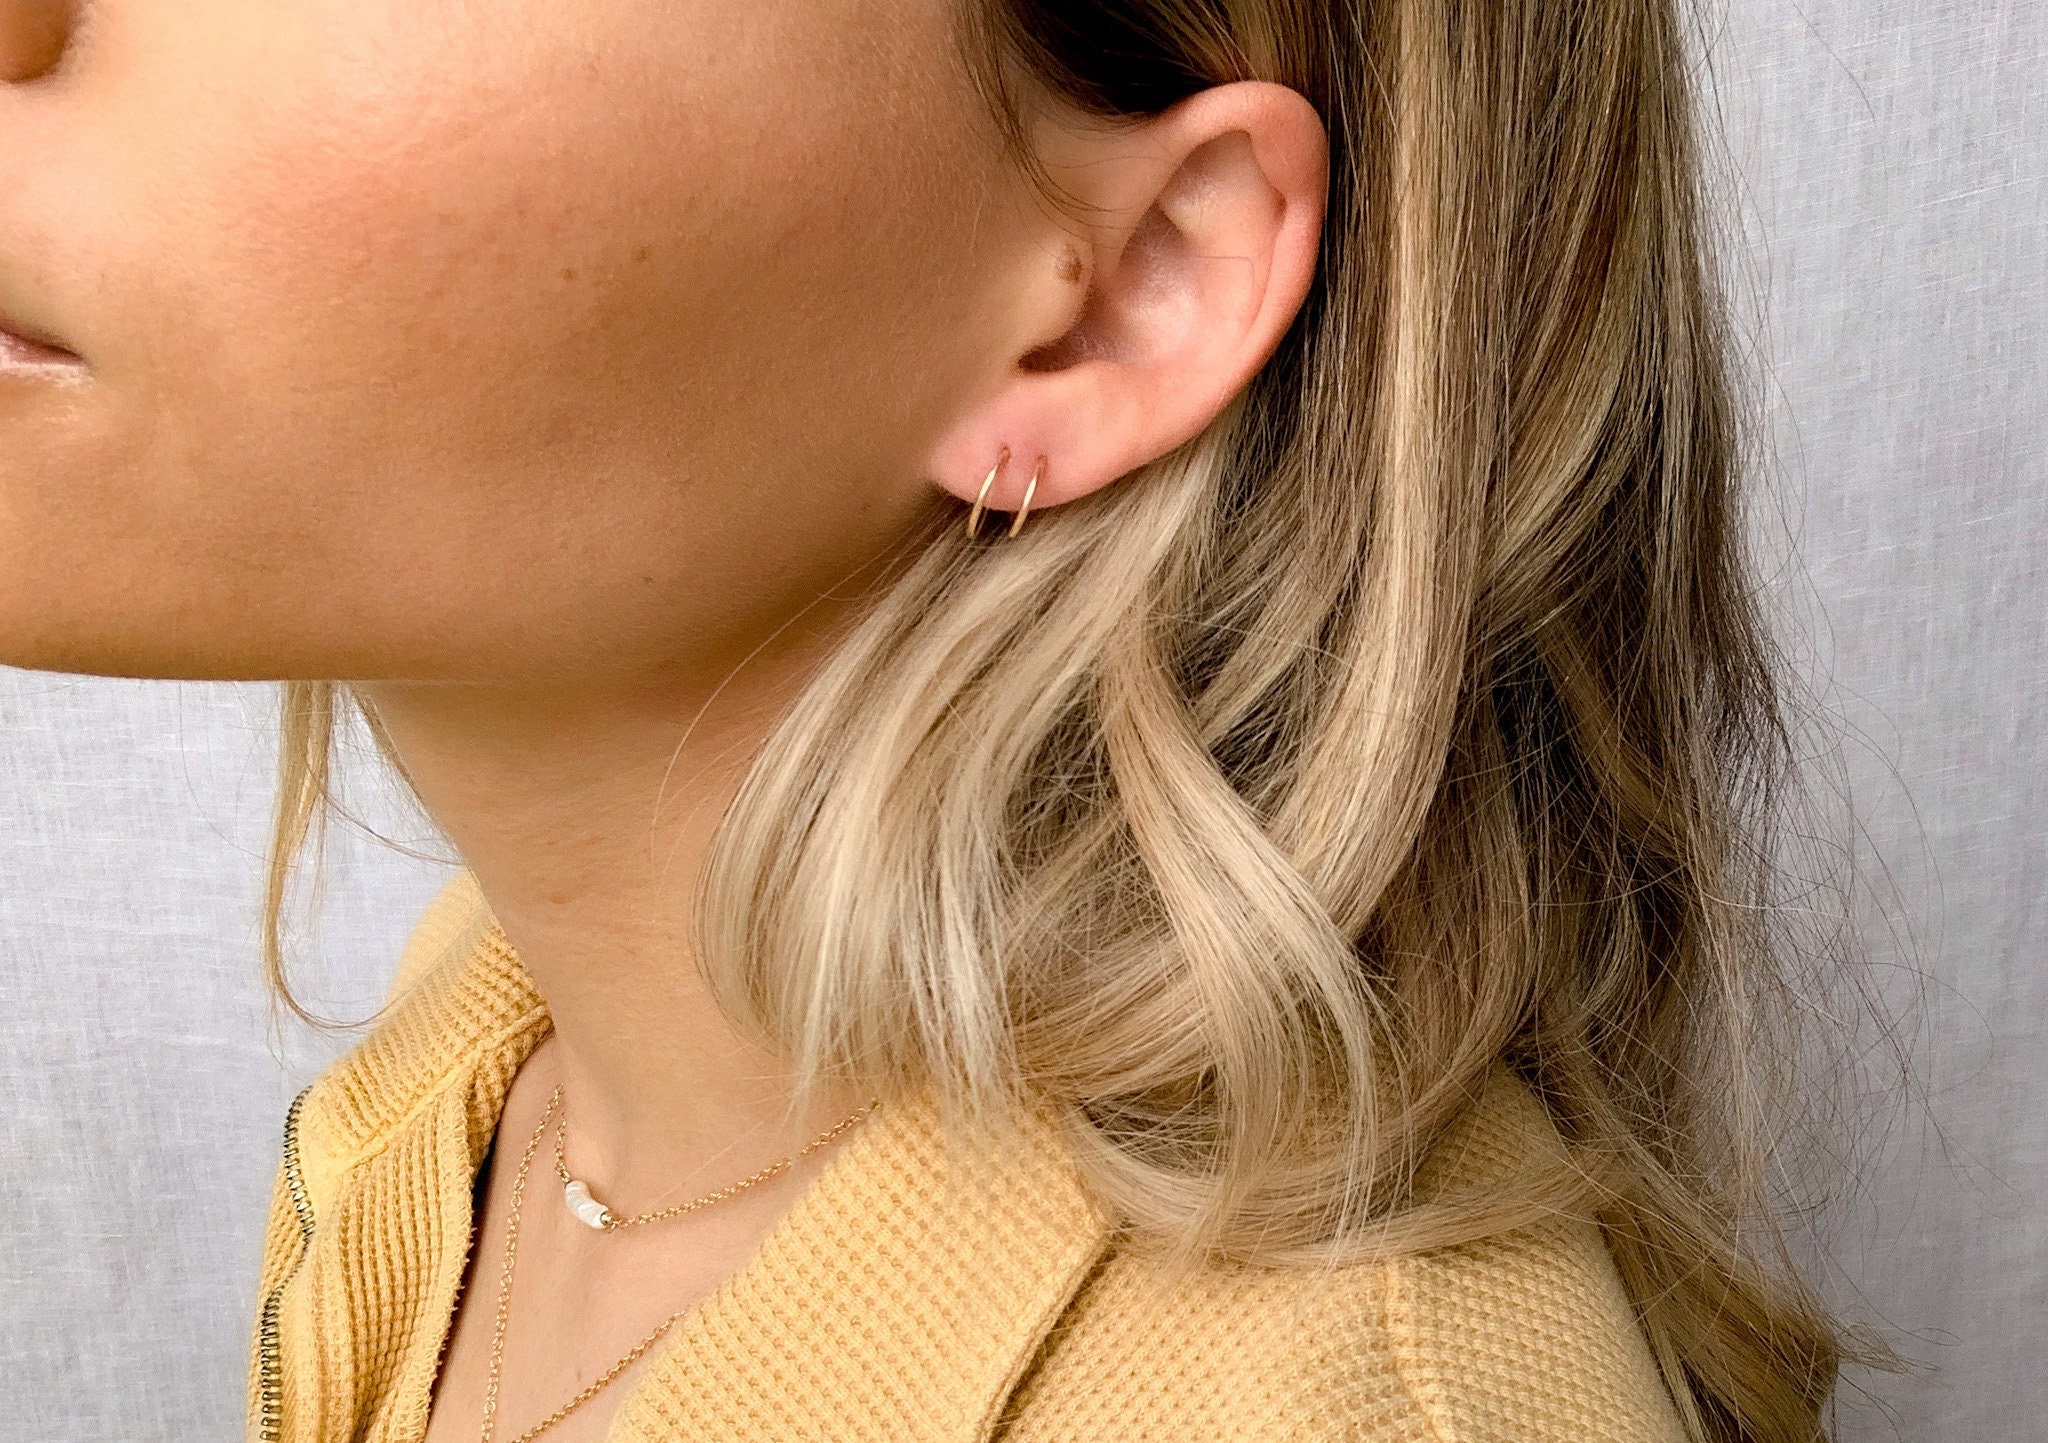 Double Upsidedown Hoop Earrings | Rustic Charm &Petals